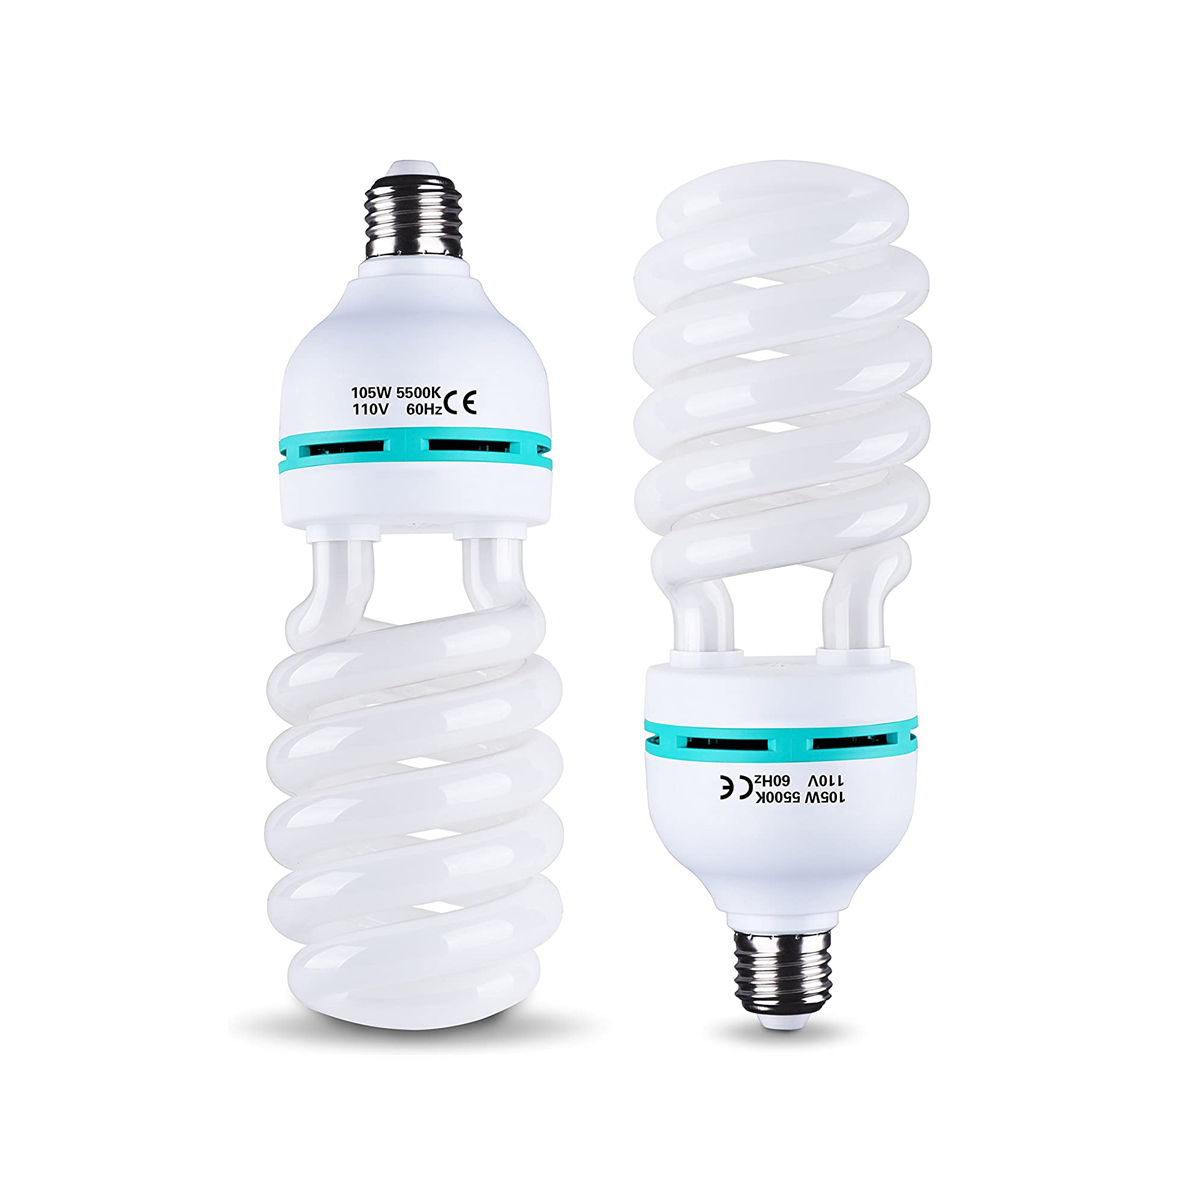 105W 5500K Full Spectrum Light Bulb, CFL Daylight for Photography -2 packs